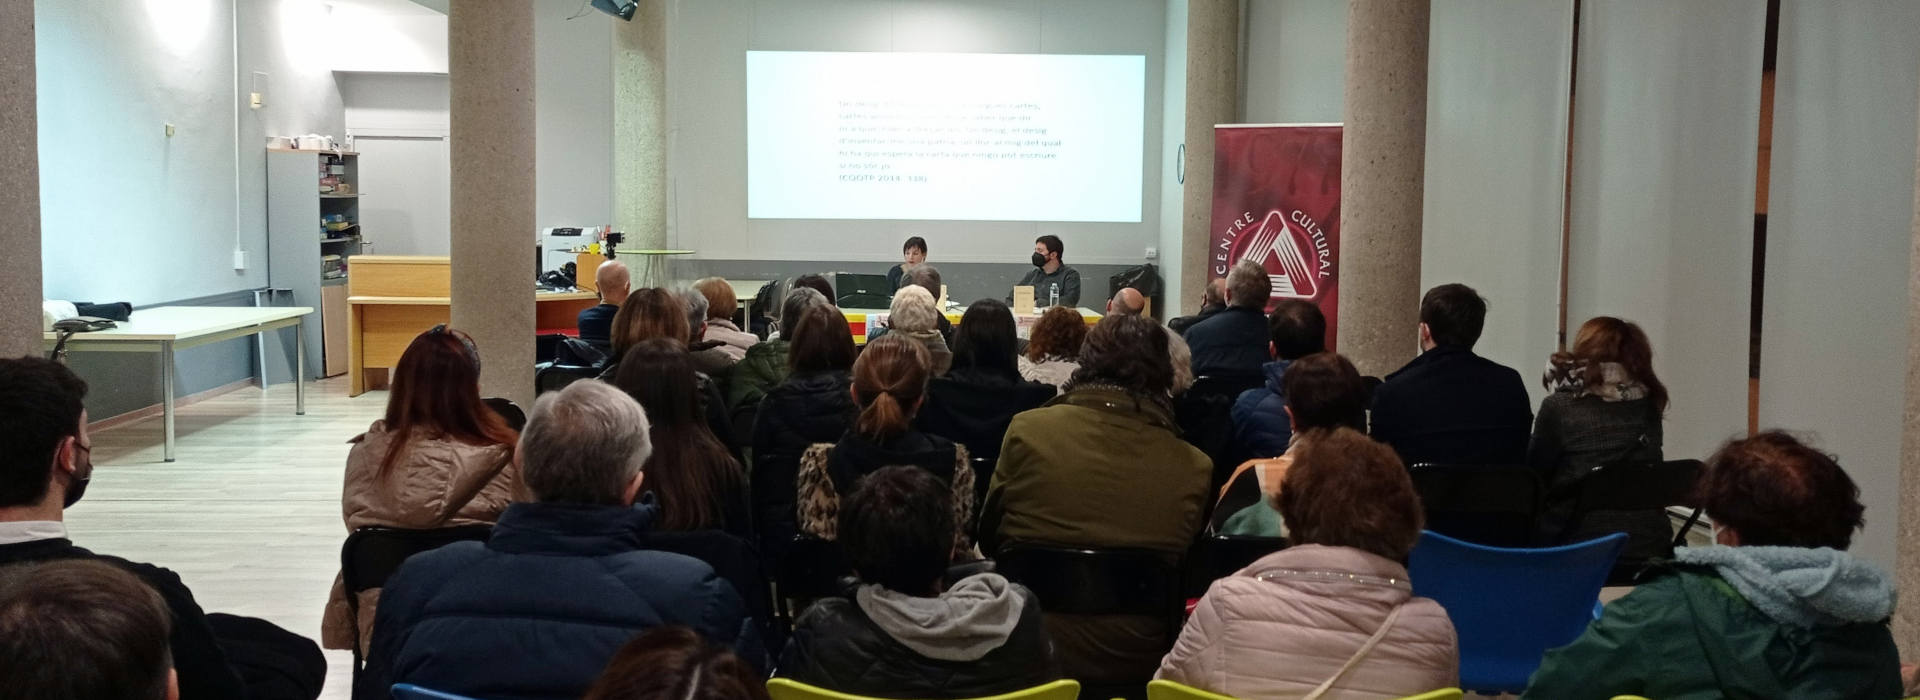 Antoni Miró entre costeres i ponts: una visita cultural a Alcoi 3